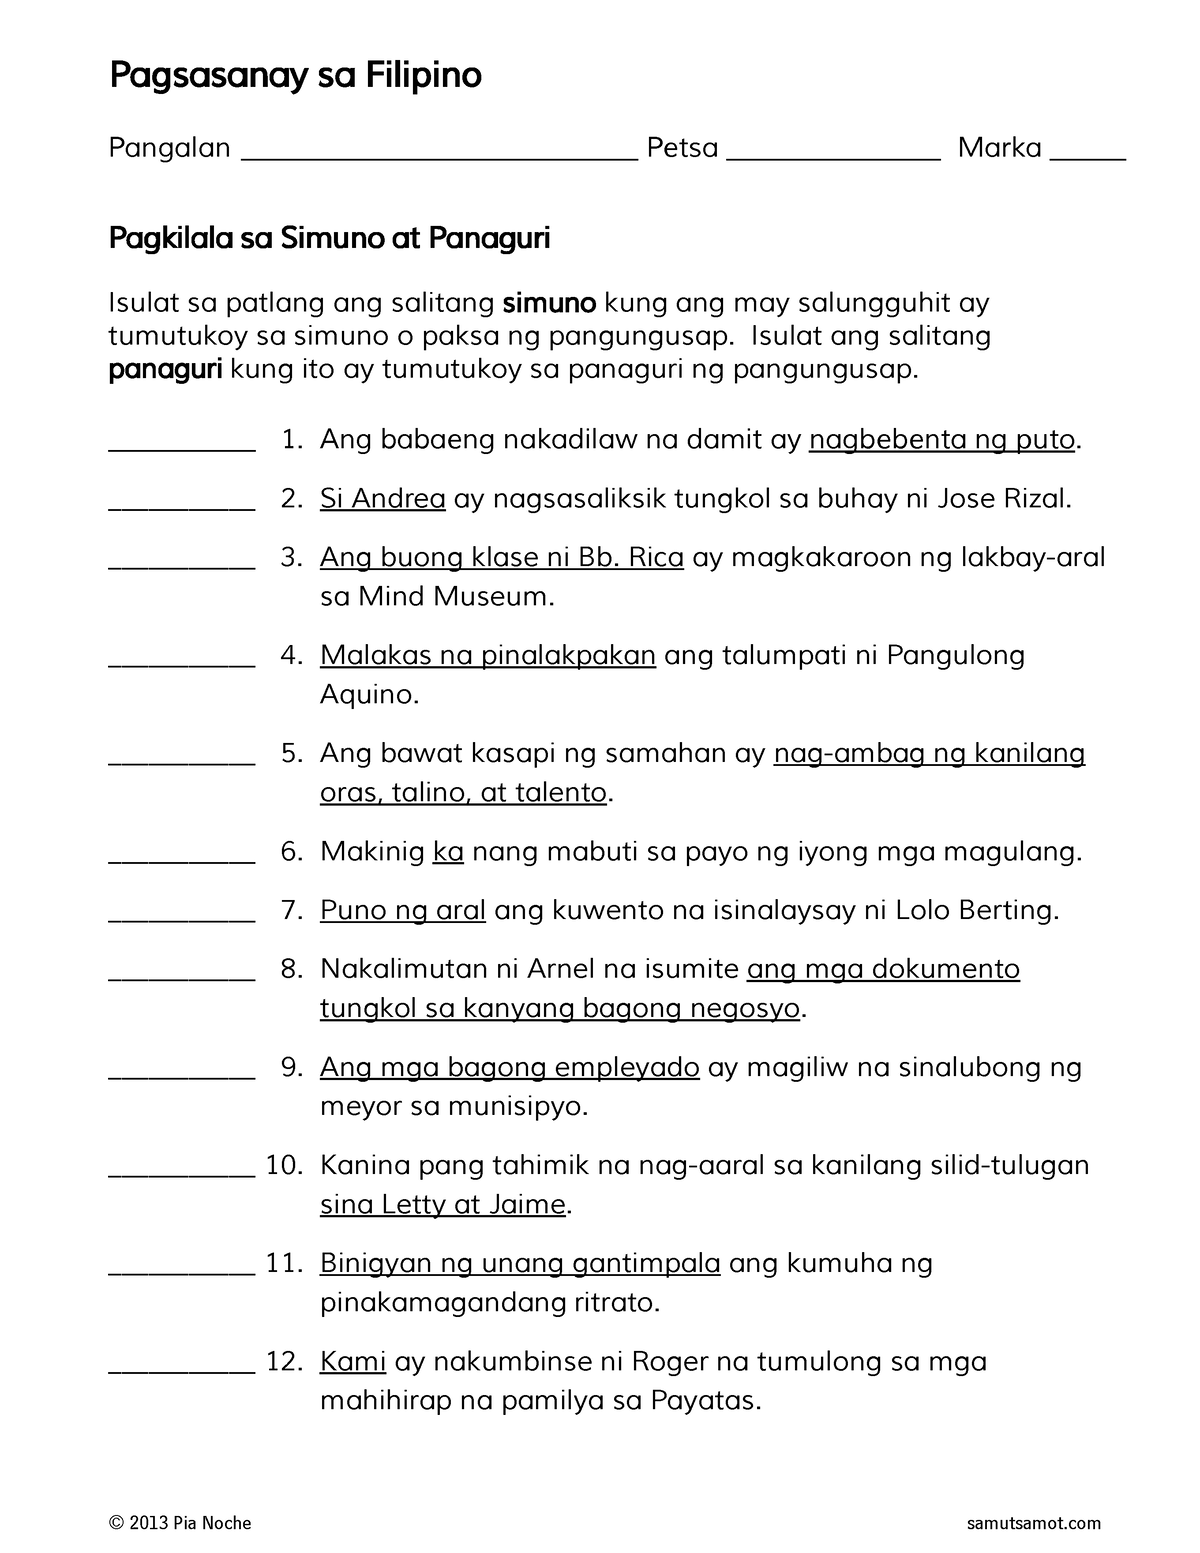 Pagkilala Sa Simuno At Panaguri 2 1 Pagsasanay Sa Filipino Pangalan 2268